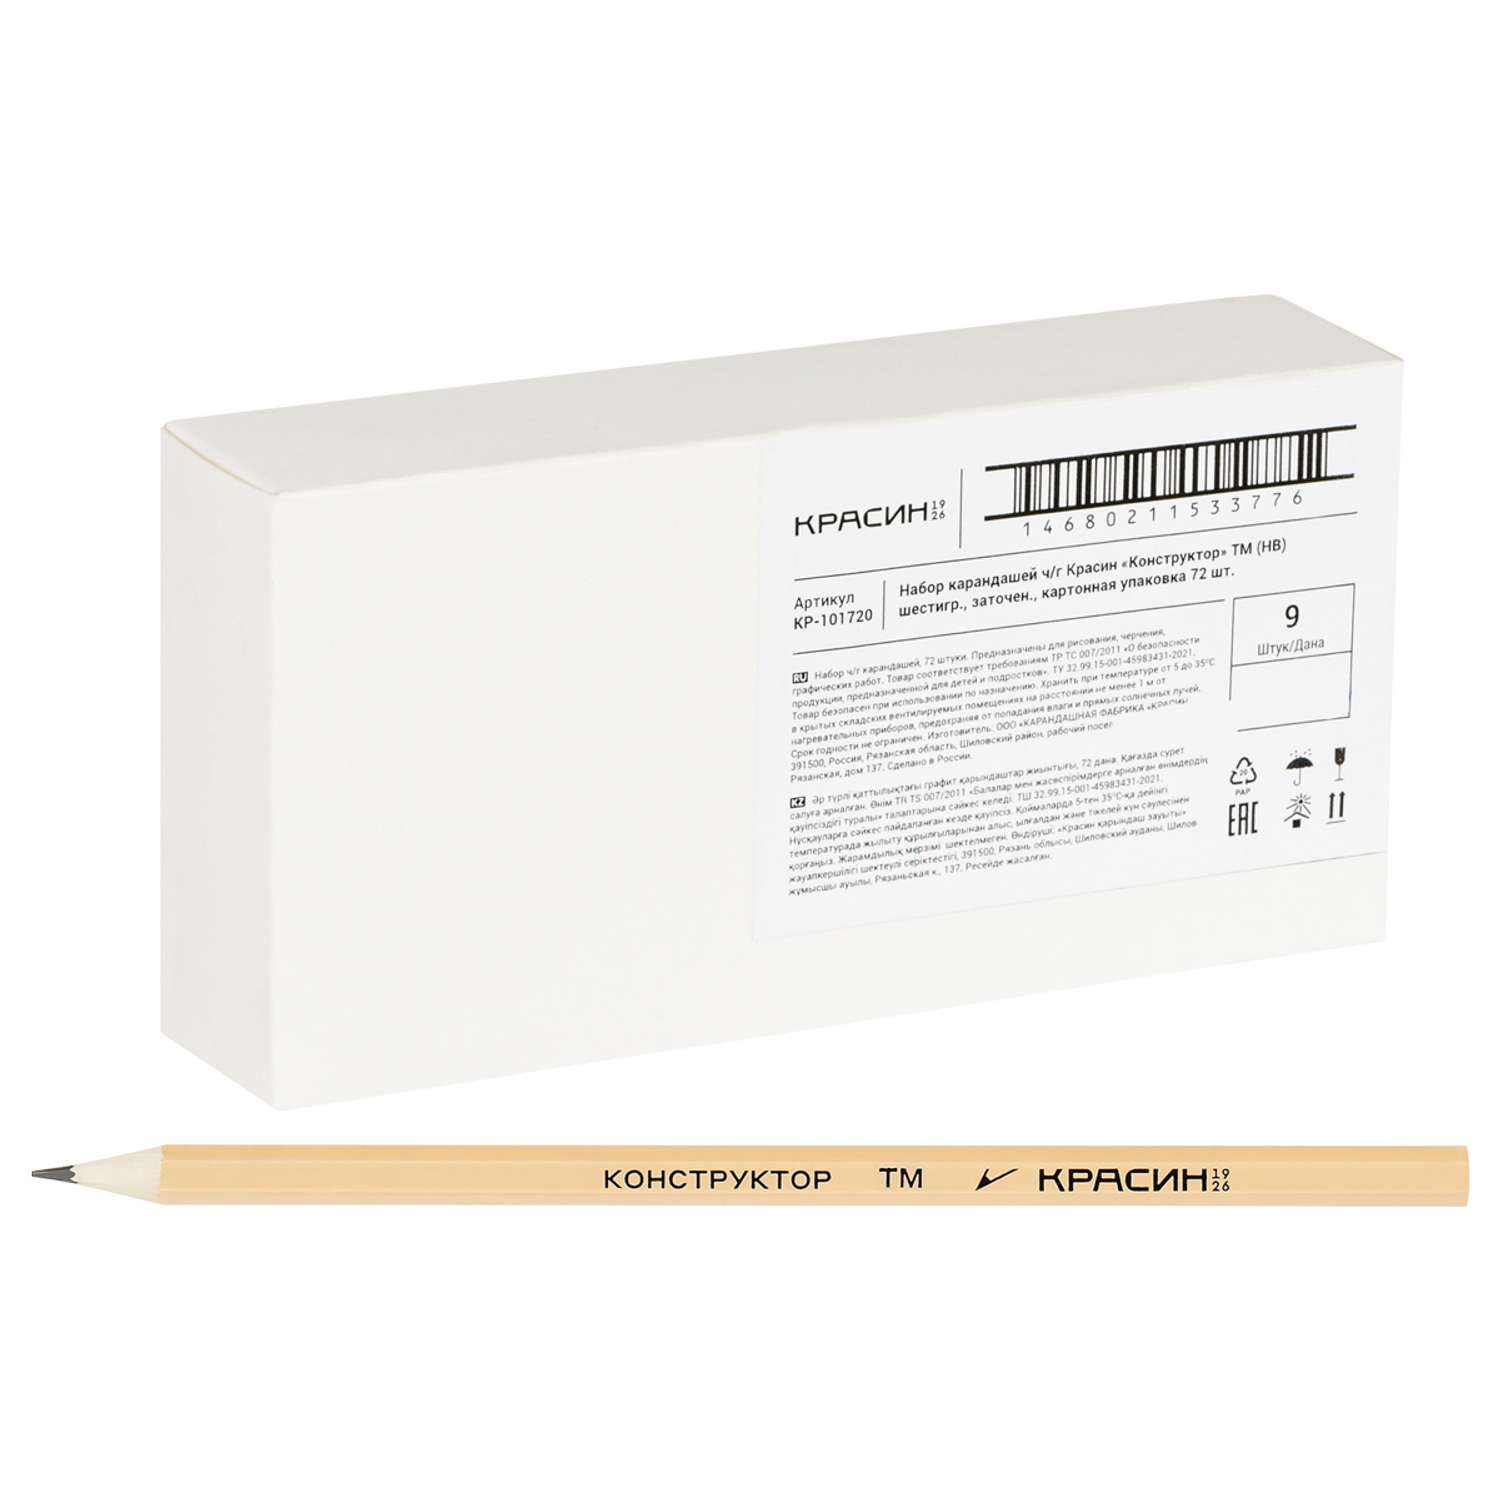 Набор карандашей Красин чернографитных Конструктор ТМ (HB) 72 шт шестигранные заточенные картонная упаковка - фото 1